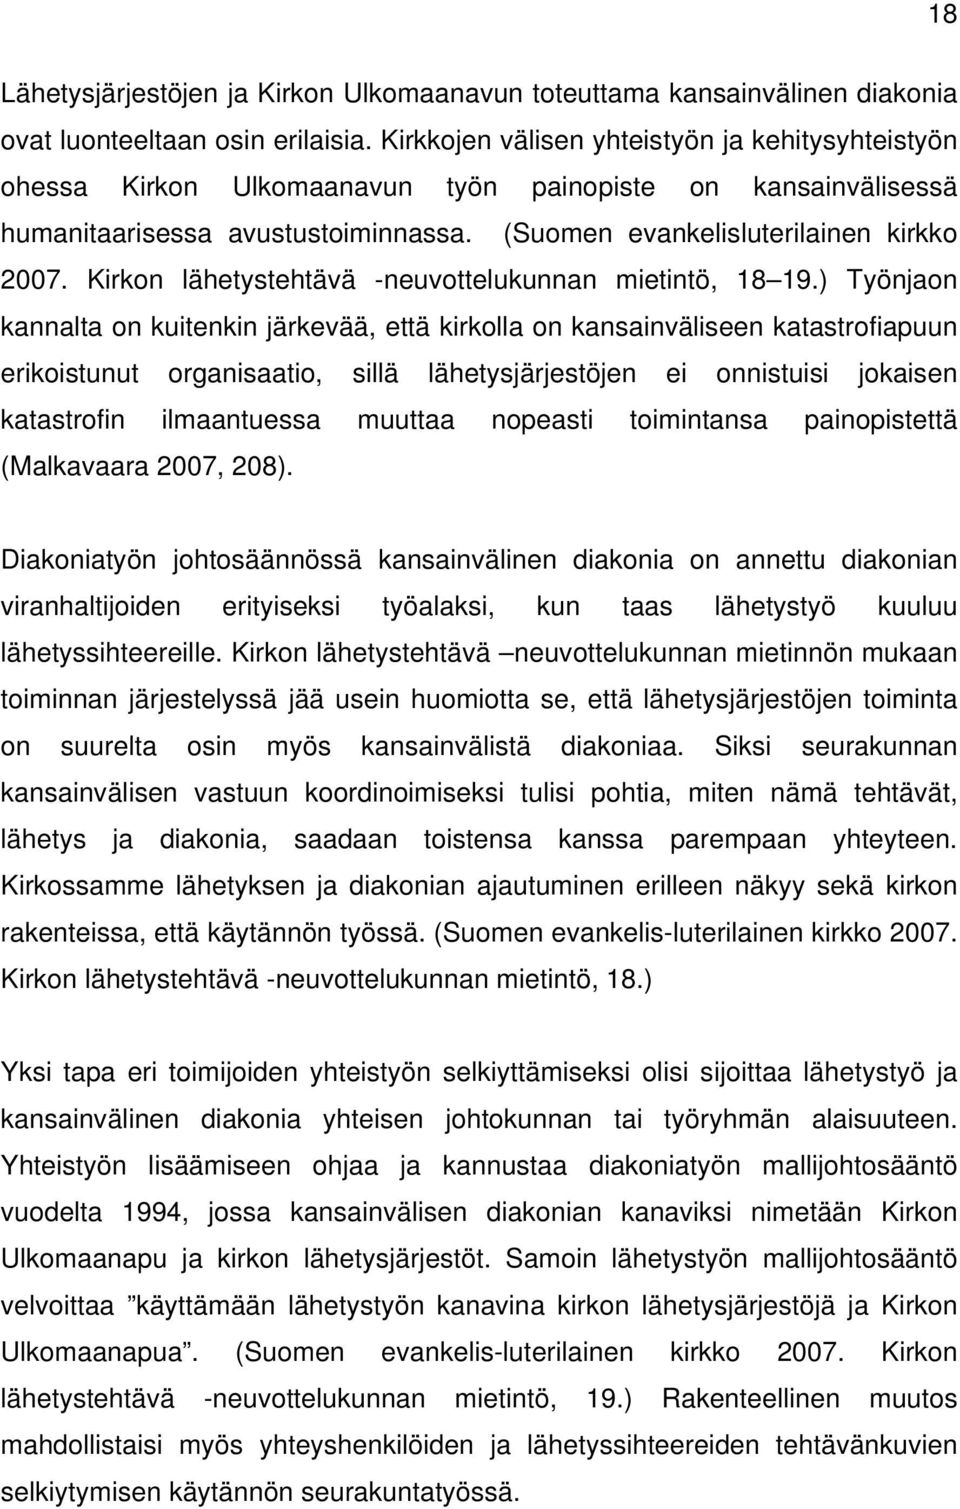 Kirkon lähetystehtävä -neuvottelukunnan mietintö, 18 19.